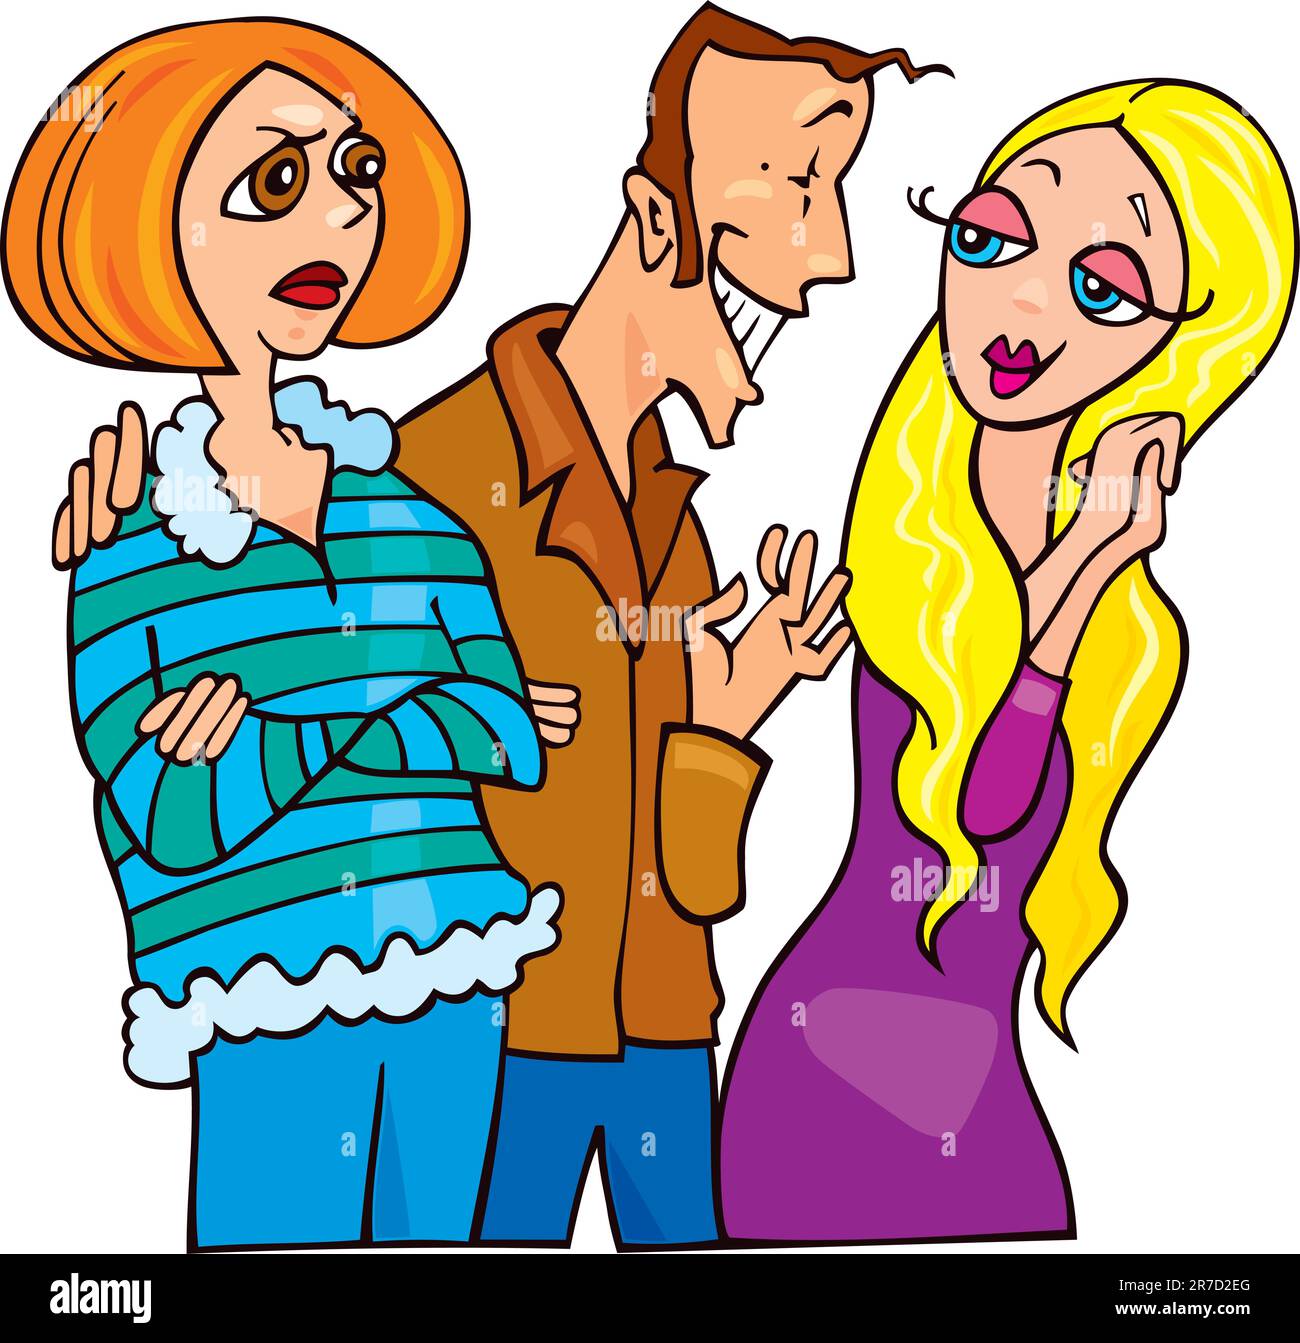 Cartoon-Illustration der Mann im Gespräch mit niedlichen blonden Mädchen und seine eifersüchtige Ehefrau Stock Vektor